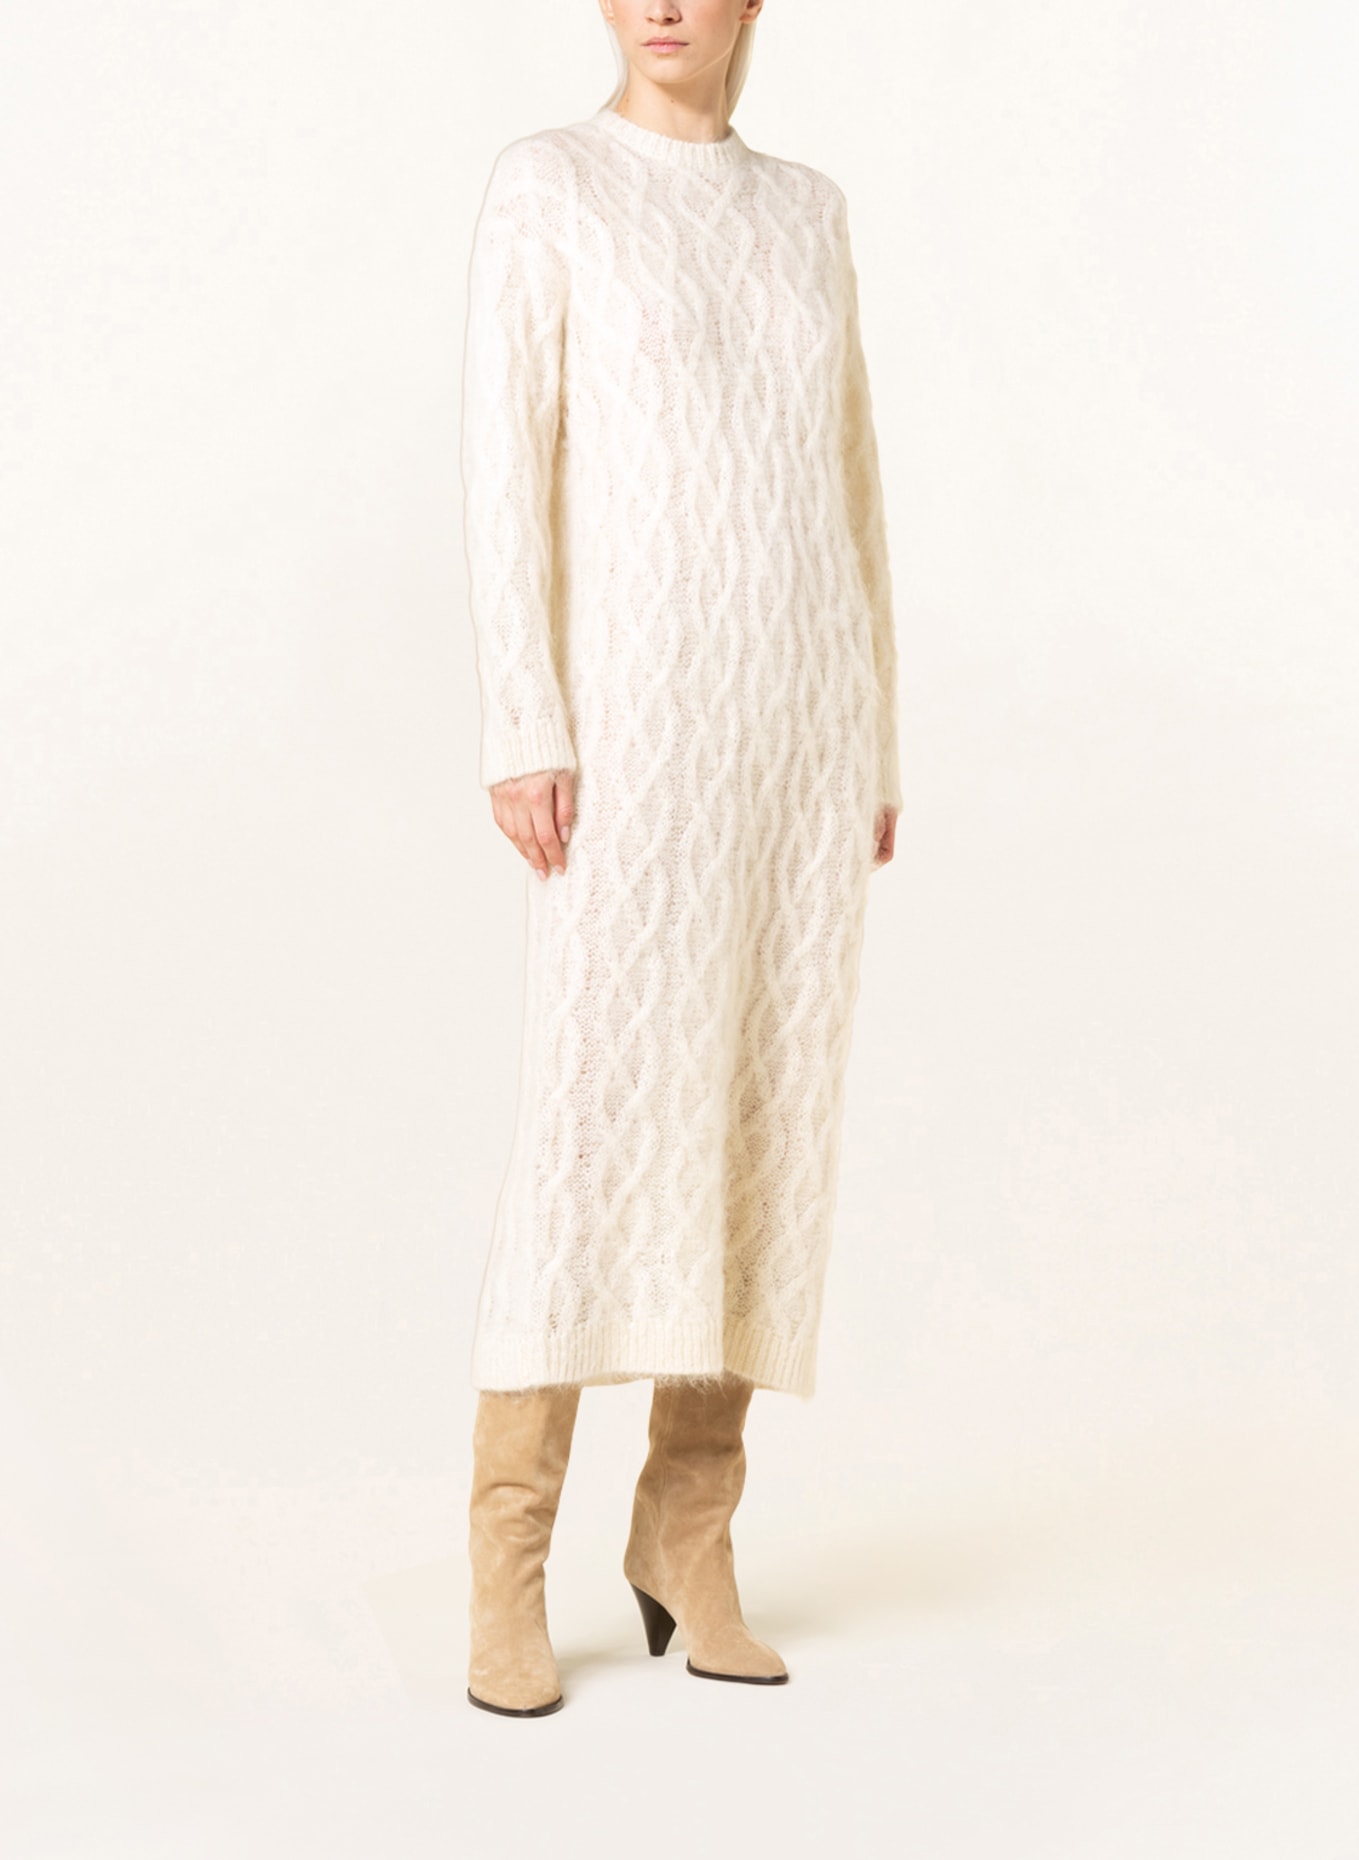 REMAIN Knit dress, Color: ECRU (Image 2)